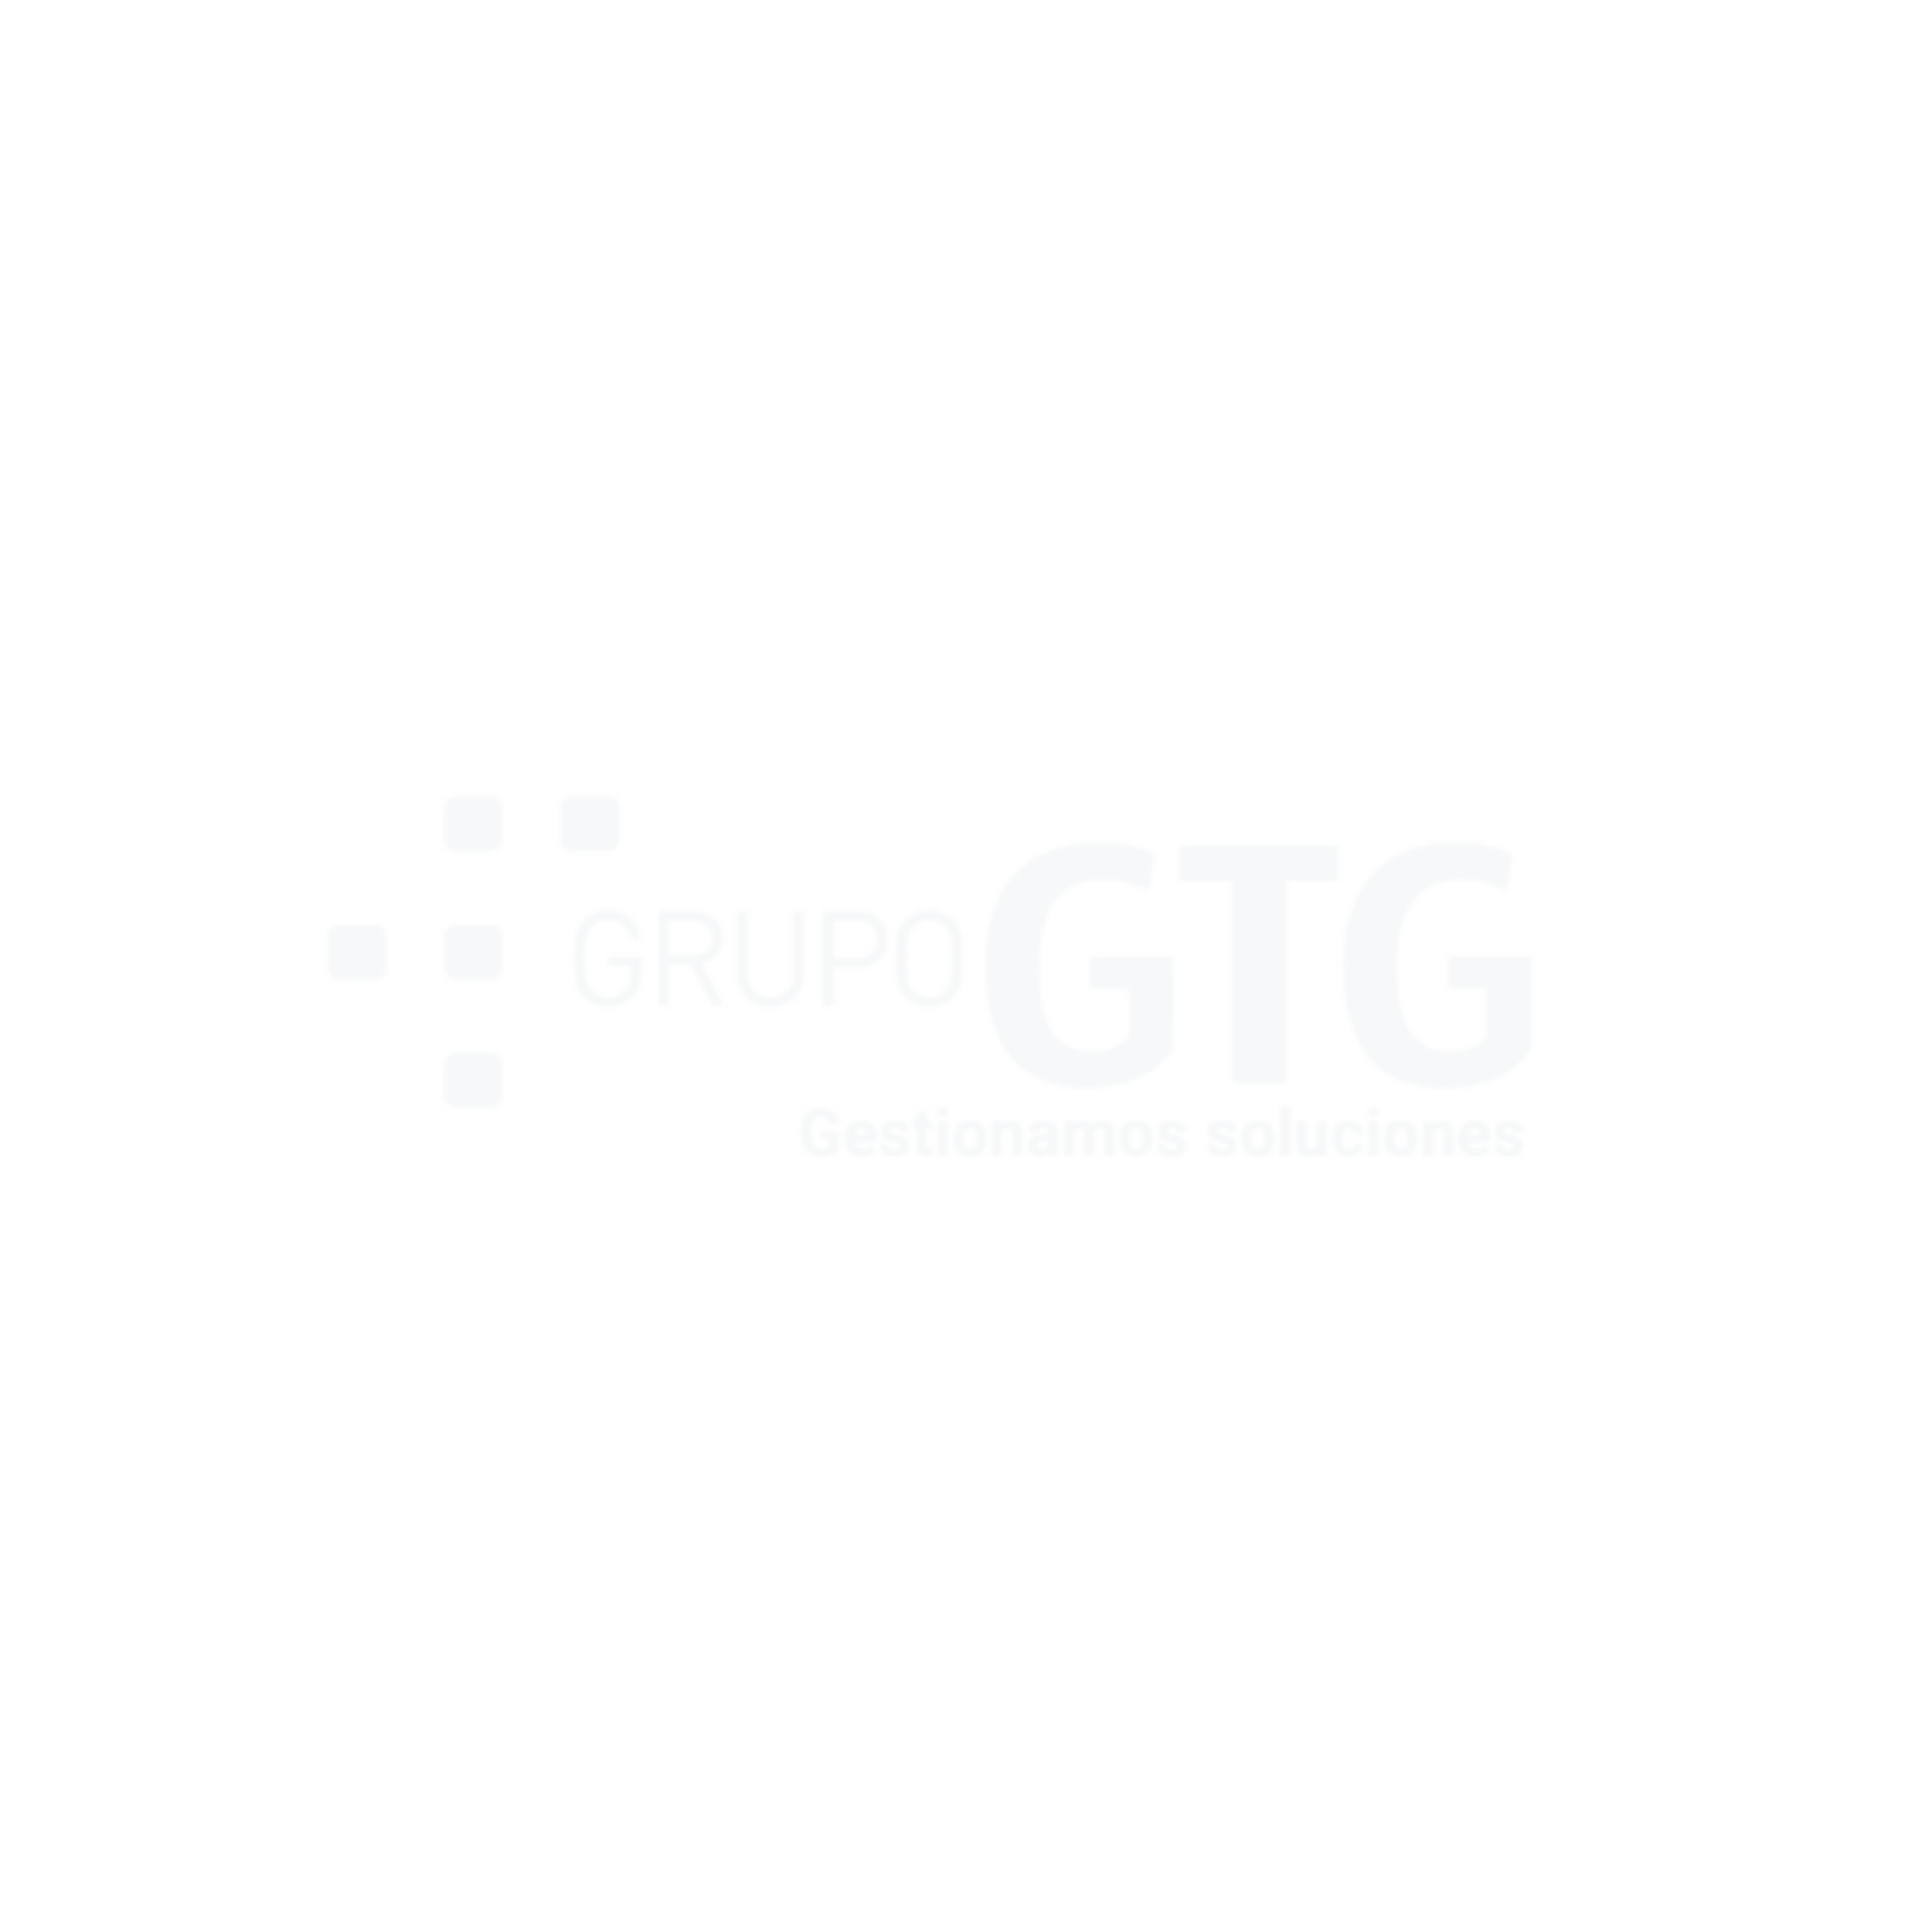 Grupo GTG